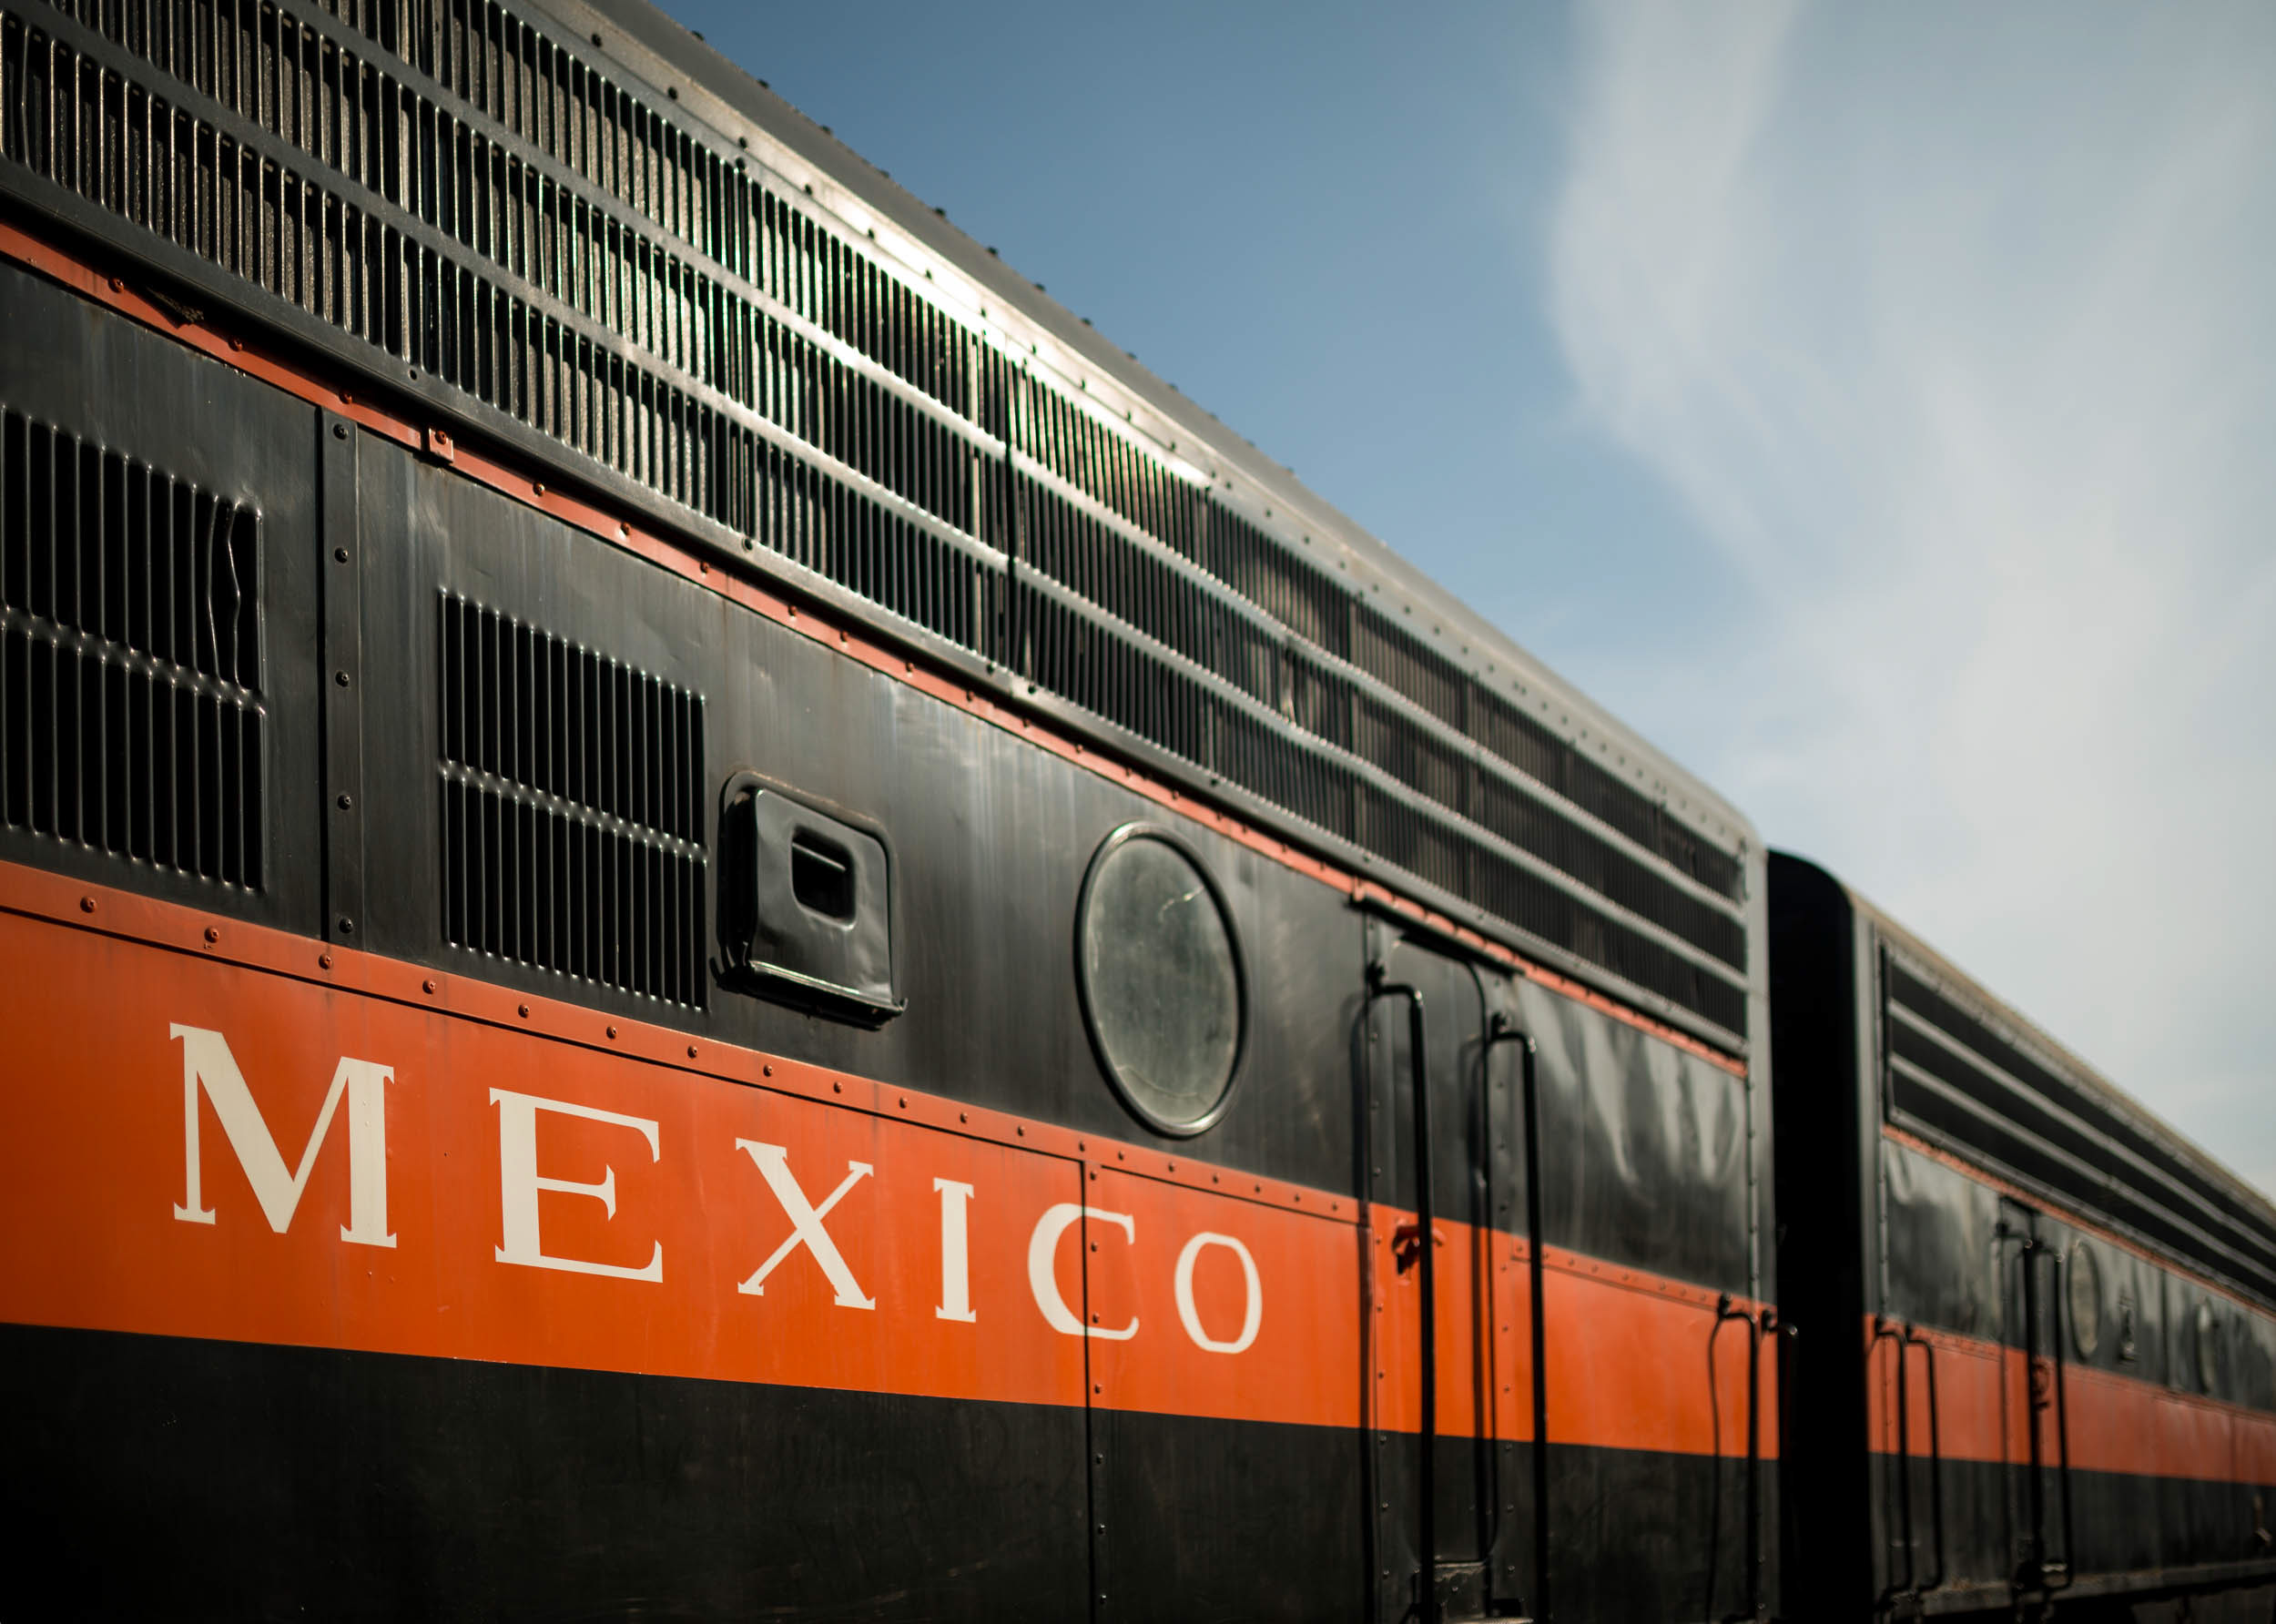 train-museo-ferrocarril-puebla-mexico